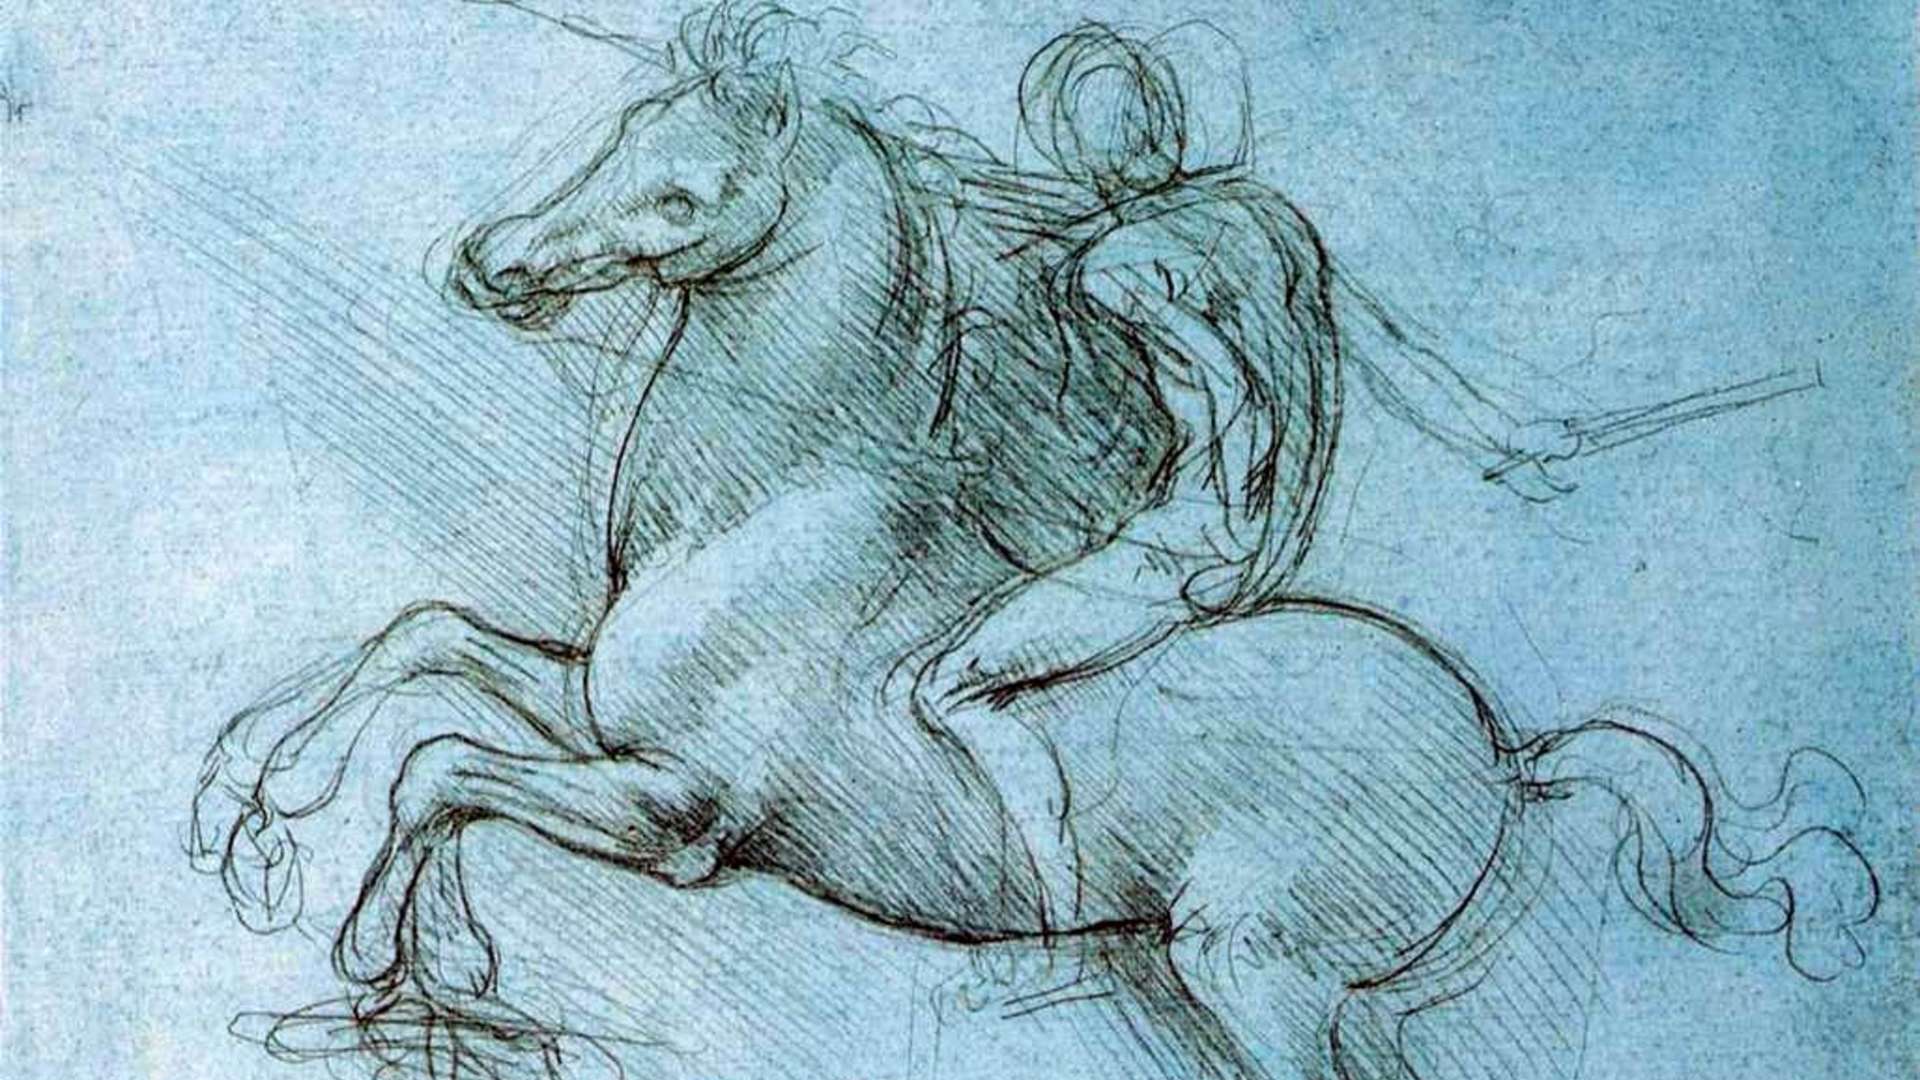 Tra bellezza e invenzione: i disegni autografi di Leonardo da Vinci arrivano a Livorno